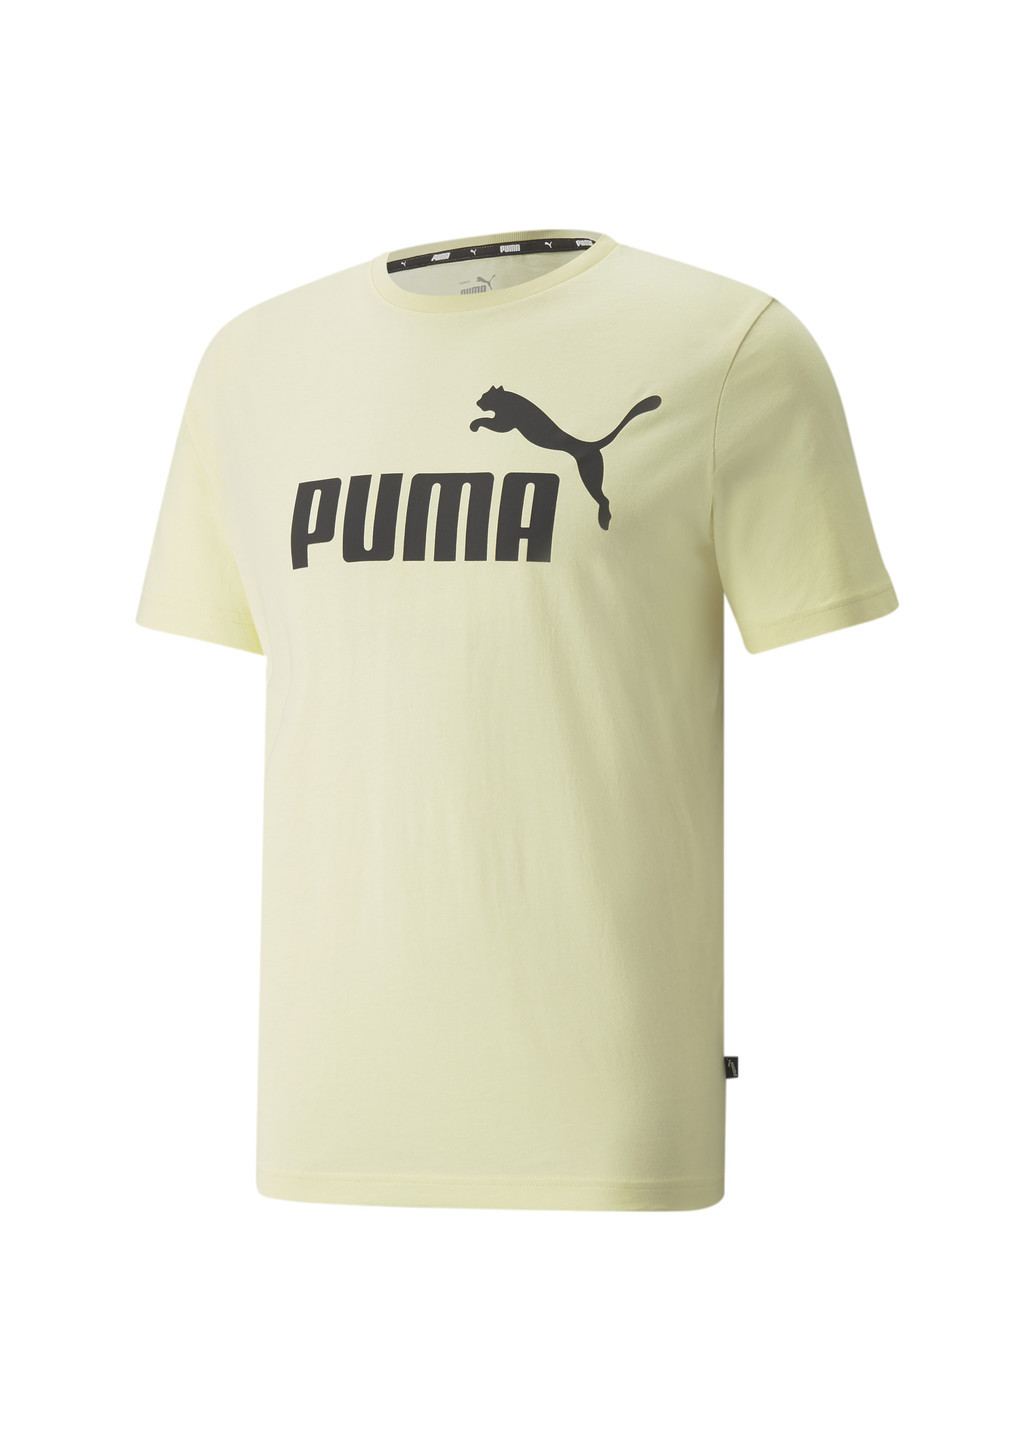 Желтая демисезонная футболка essentials logo men's tee Puma